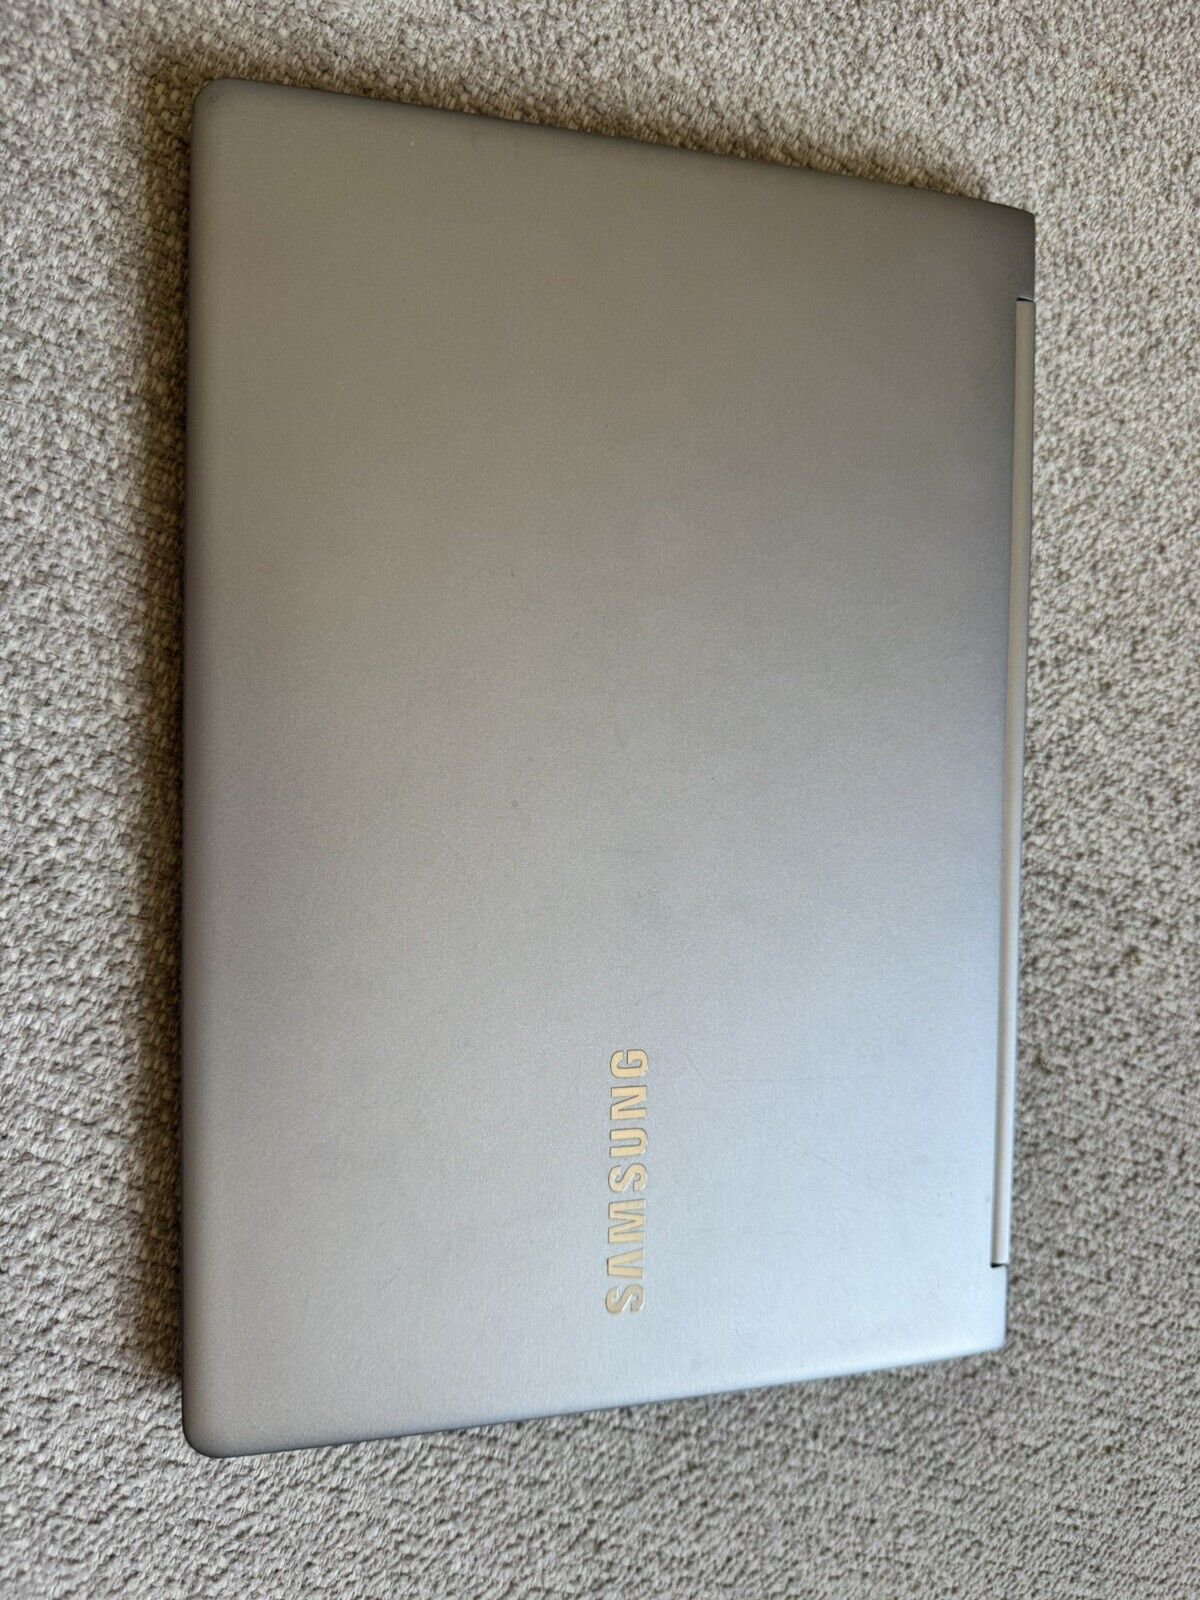 SAMSUNG Notebook 9, i5-6200U, 8GB RAM, 256GB SSD, Win 10